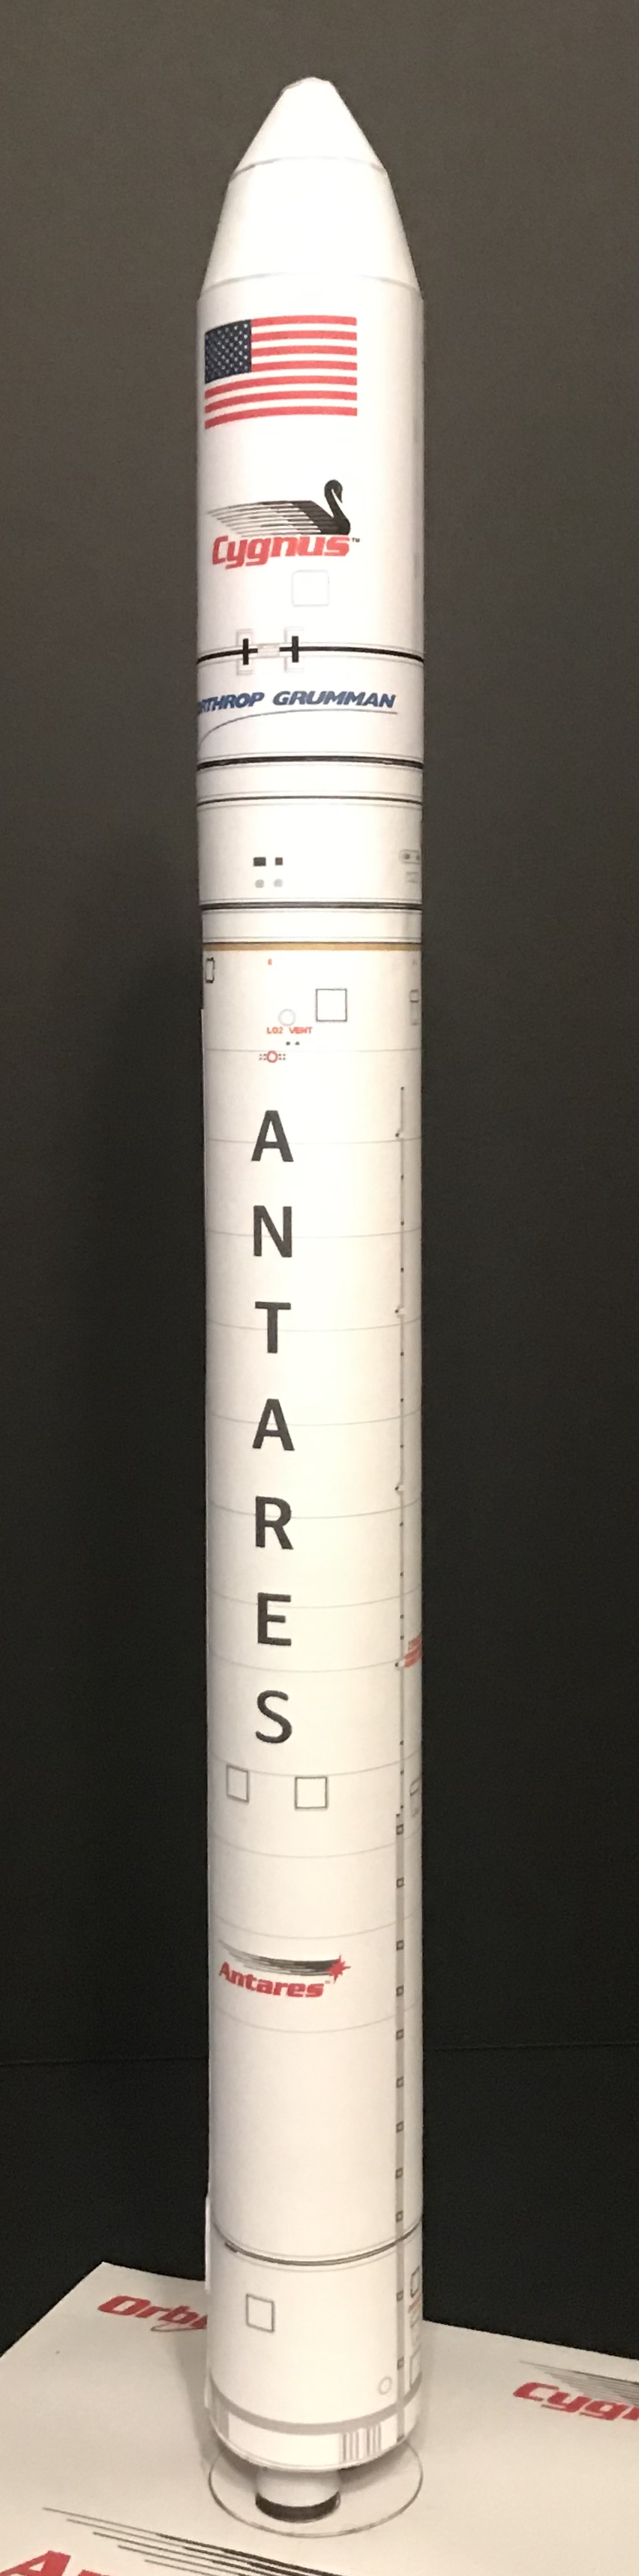 Antares NG-10-image